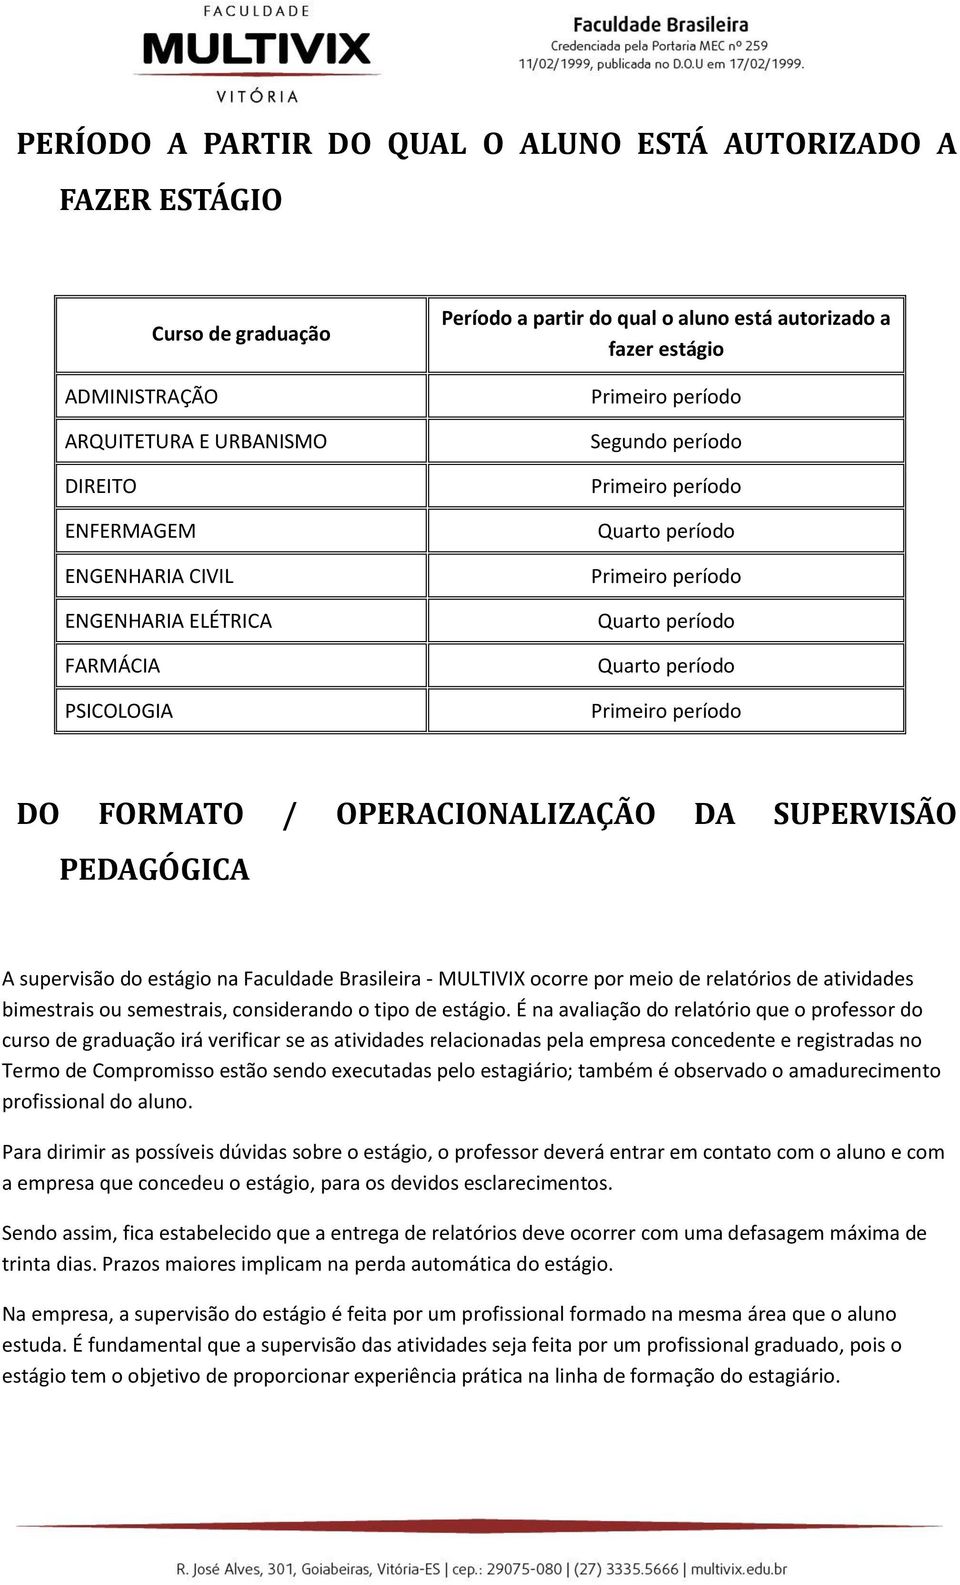 FORMATO / OPERACIONALIZAÇÃO DA SUPERVISÃO PEDAGÓGICA A supervisão do estágio na Faculdade Brasileira - MULTIVIX ocorre por meio de relatórios de atividades bimestrais ou semestrais, considerando o